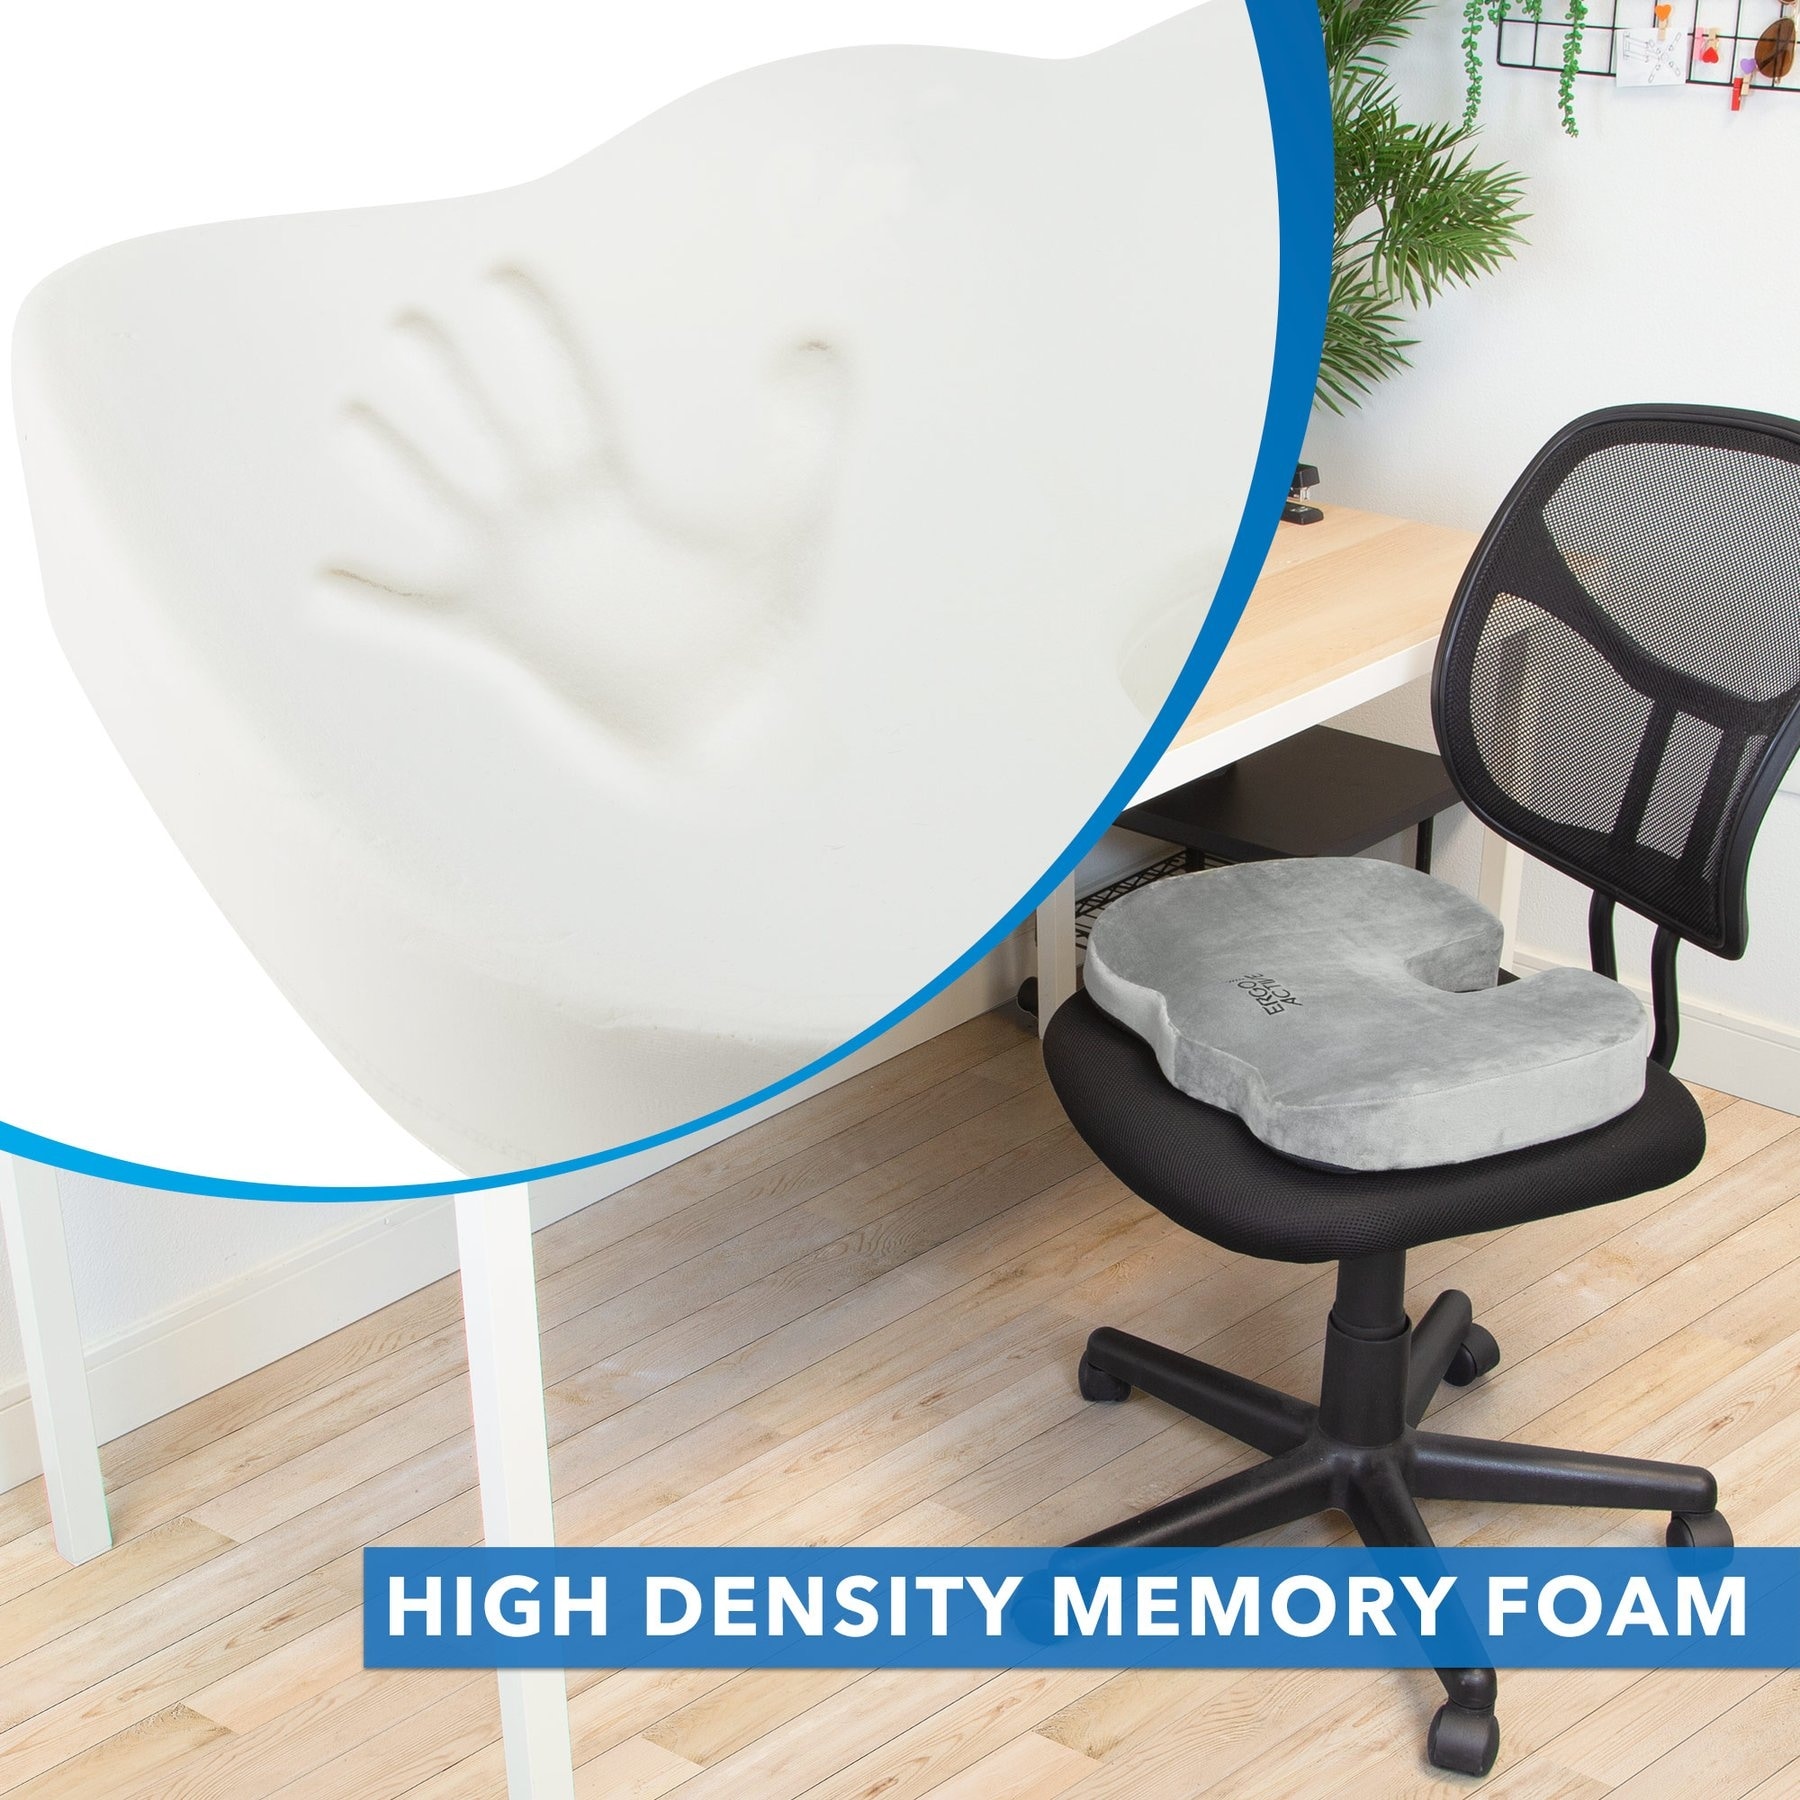 Premium Gel + Memory Foam Office Chair Cushion, Car Seat Cushion